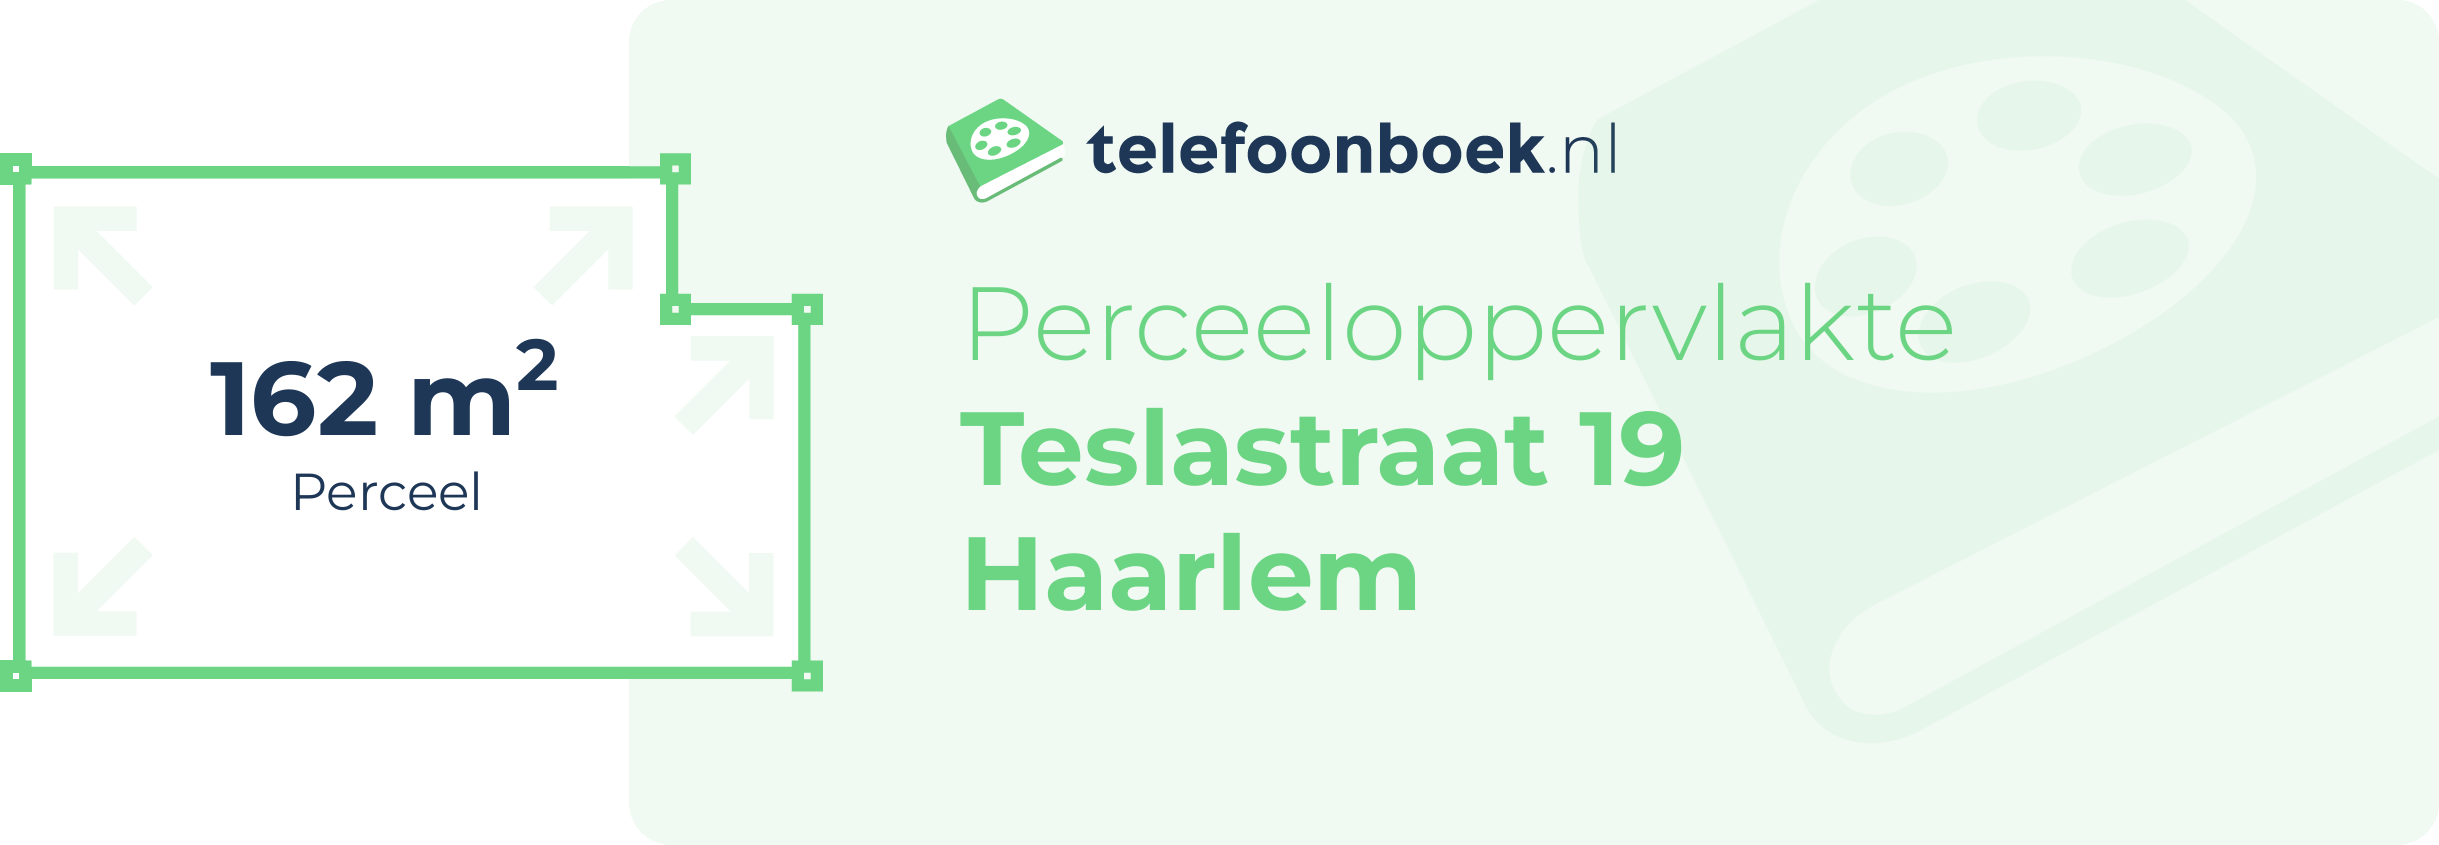 Perceeloppervlakte Teslastraat 19 Haarlem